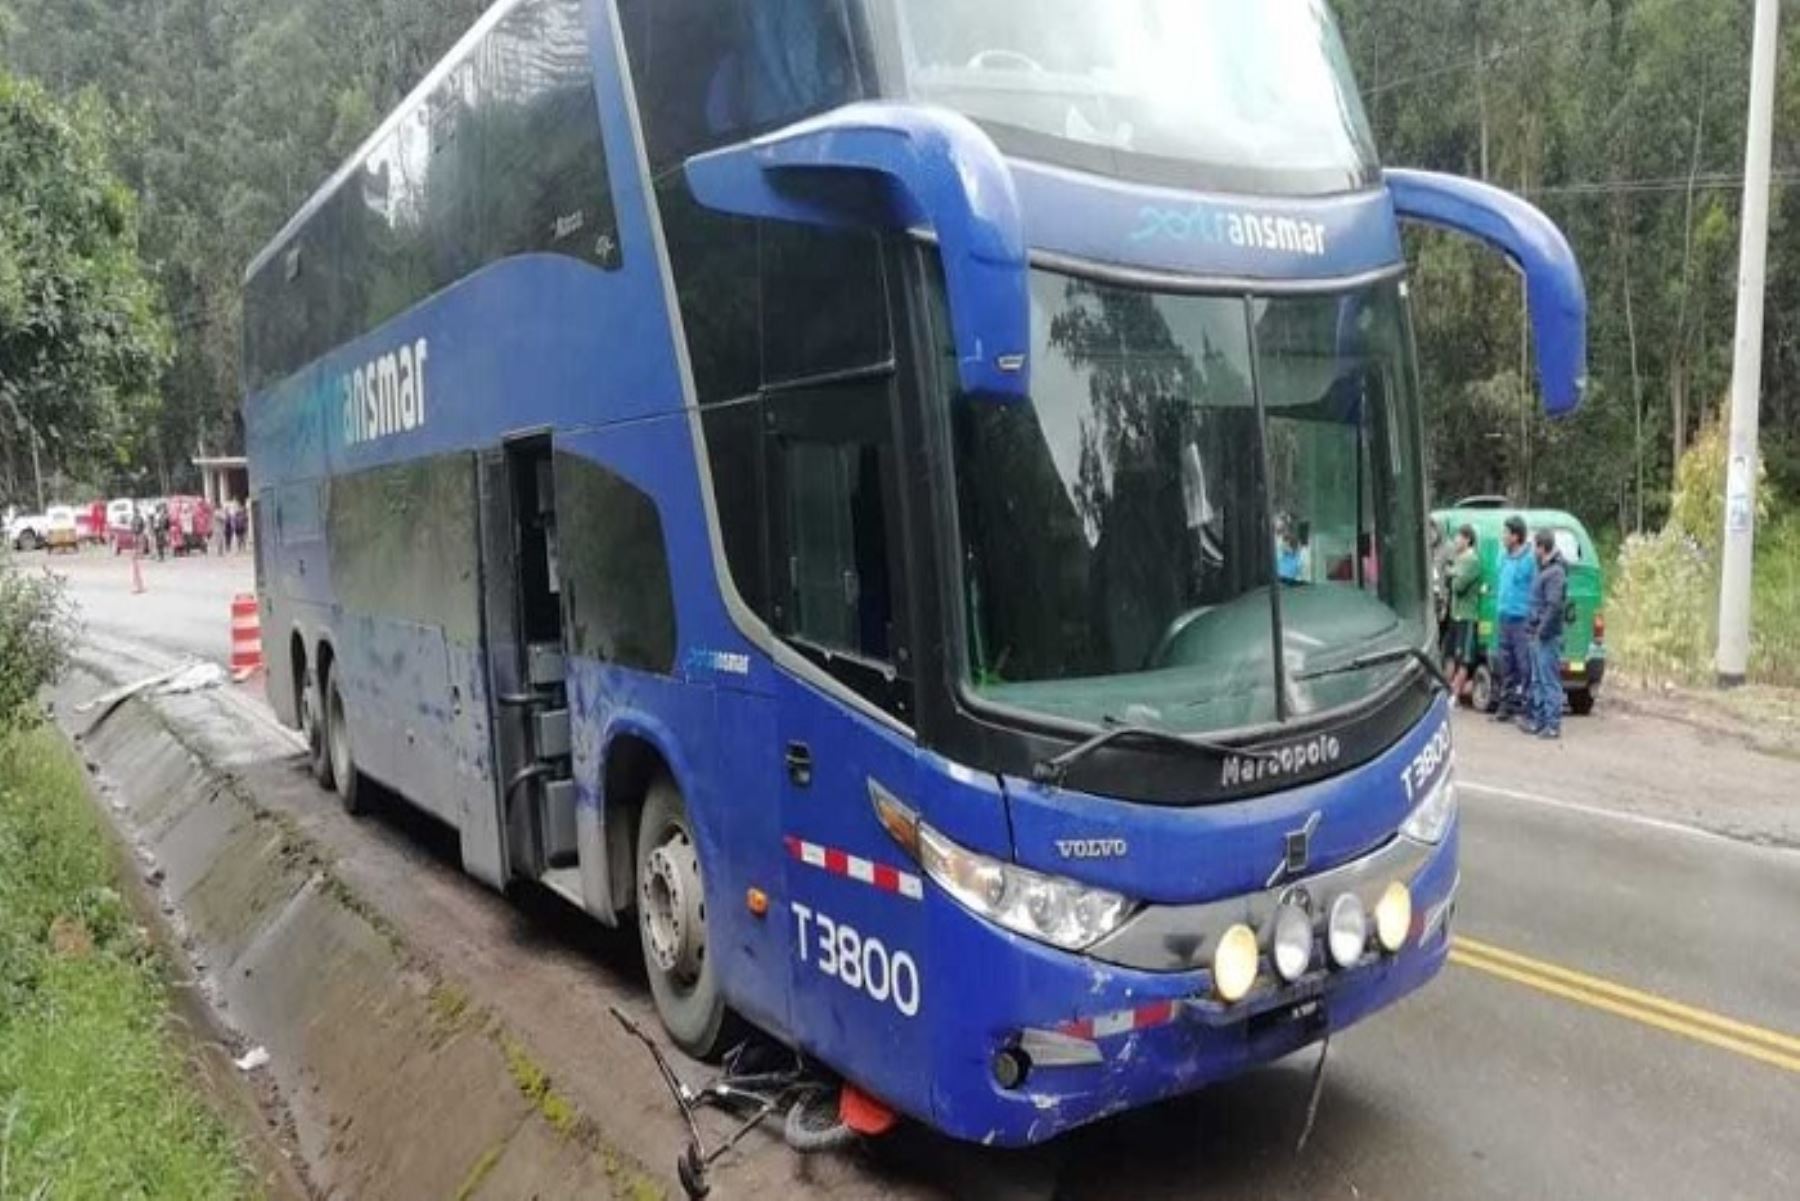 Dos menores murieron arrolladas por un bus interprovincial en el kilómetro 170 de la Carretera Central, tramo Pasco – Huánuco, distrito de Huariaca, informó la Policía local.